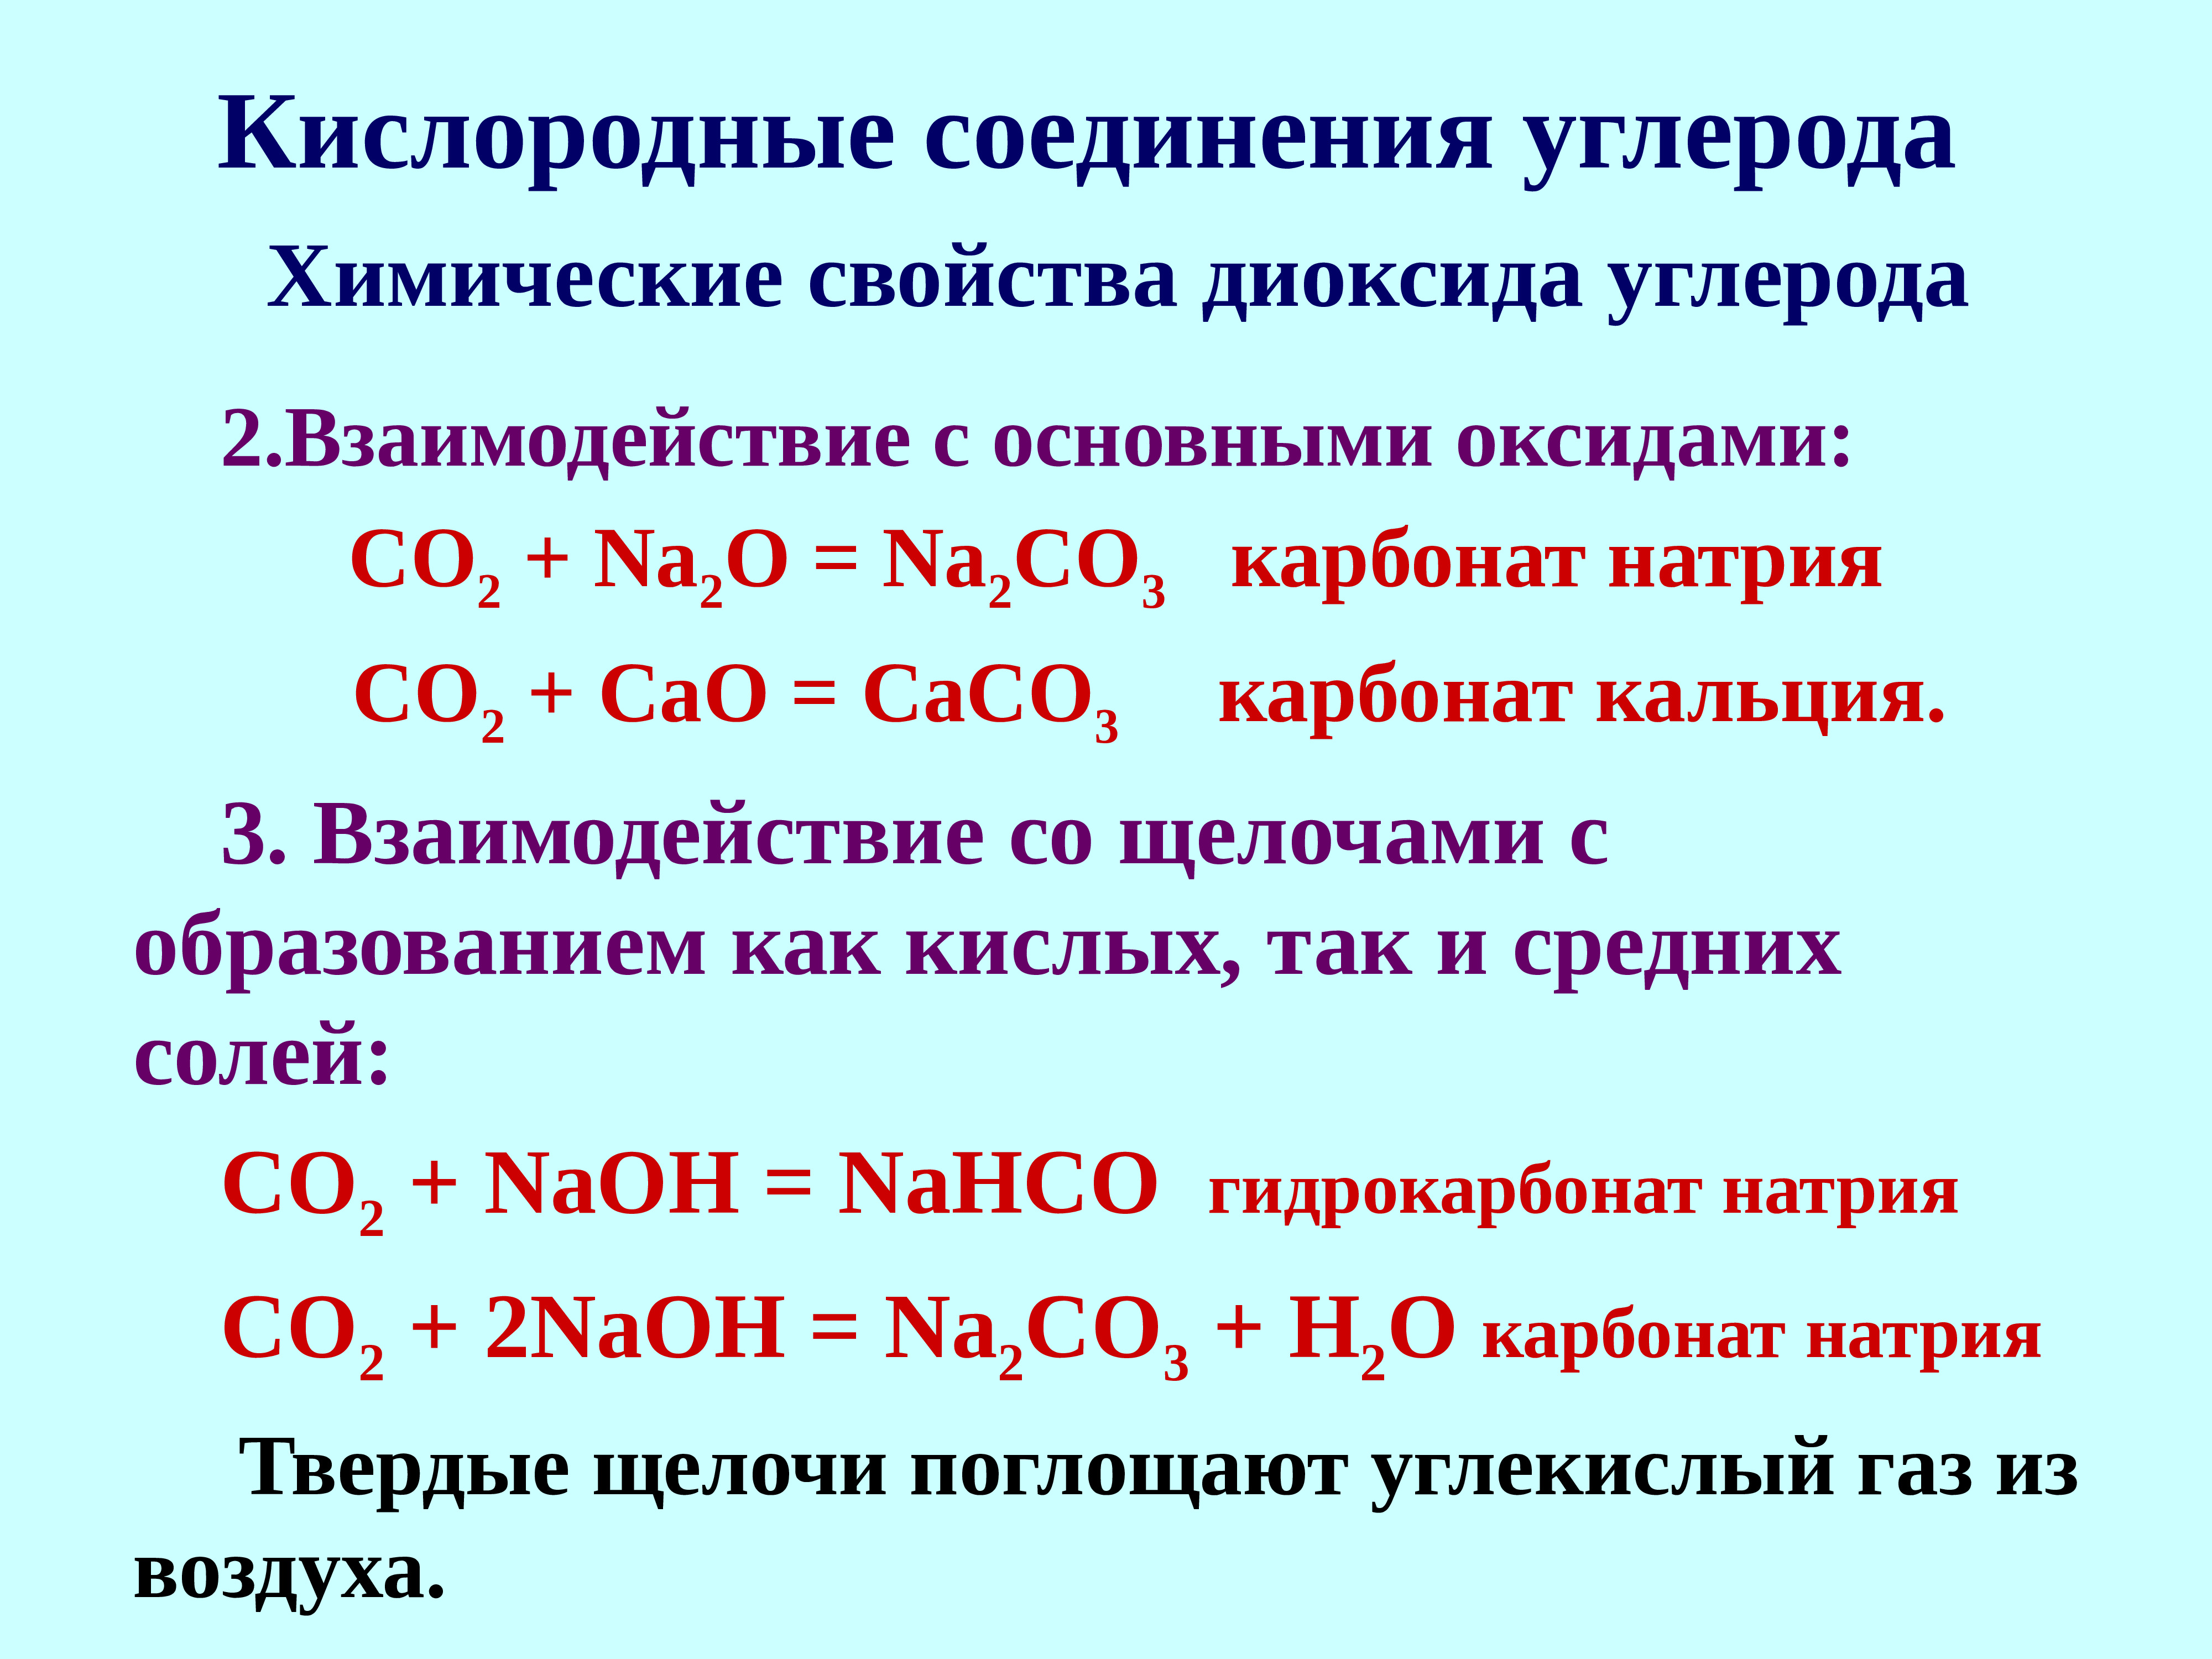 Гидрокарбонат калия и углекислый газ. Кислородные соединения. Кислородные соединения углерода. Карбонат кальция в гидрокарбонат кальция. Карбонат кальция и углекислый ГАЗ.